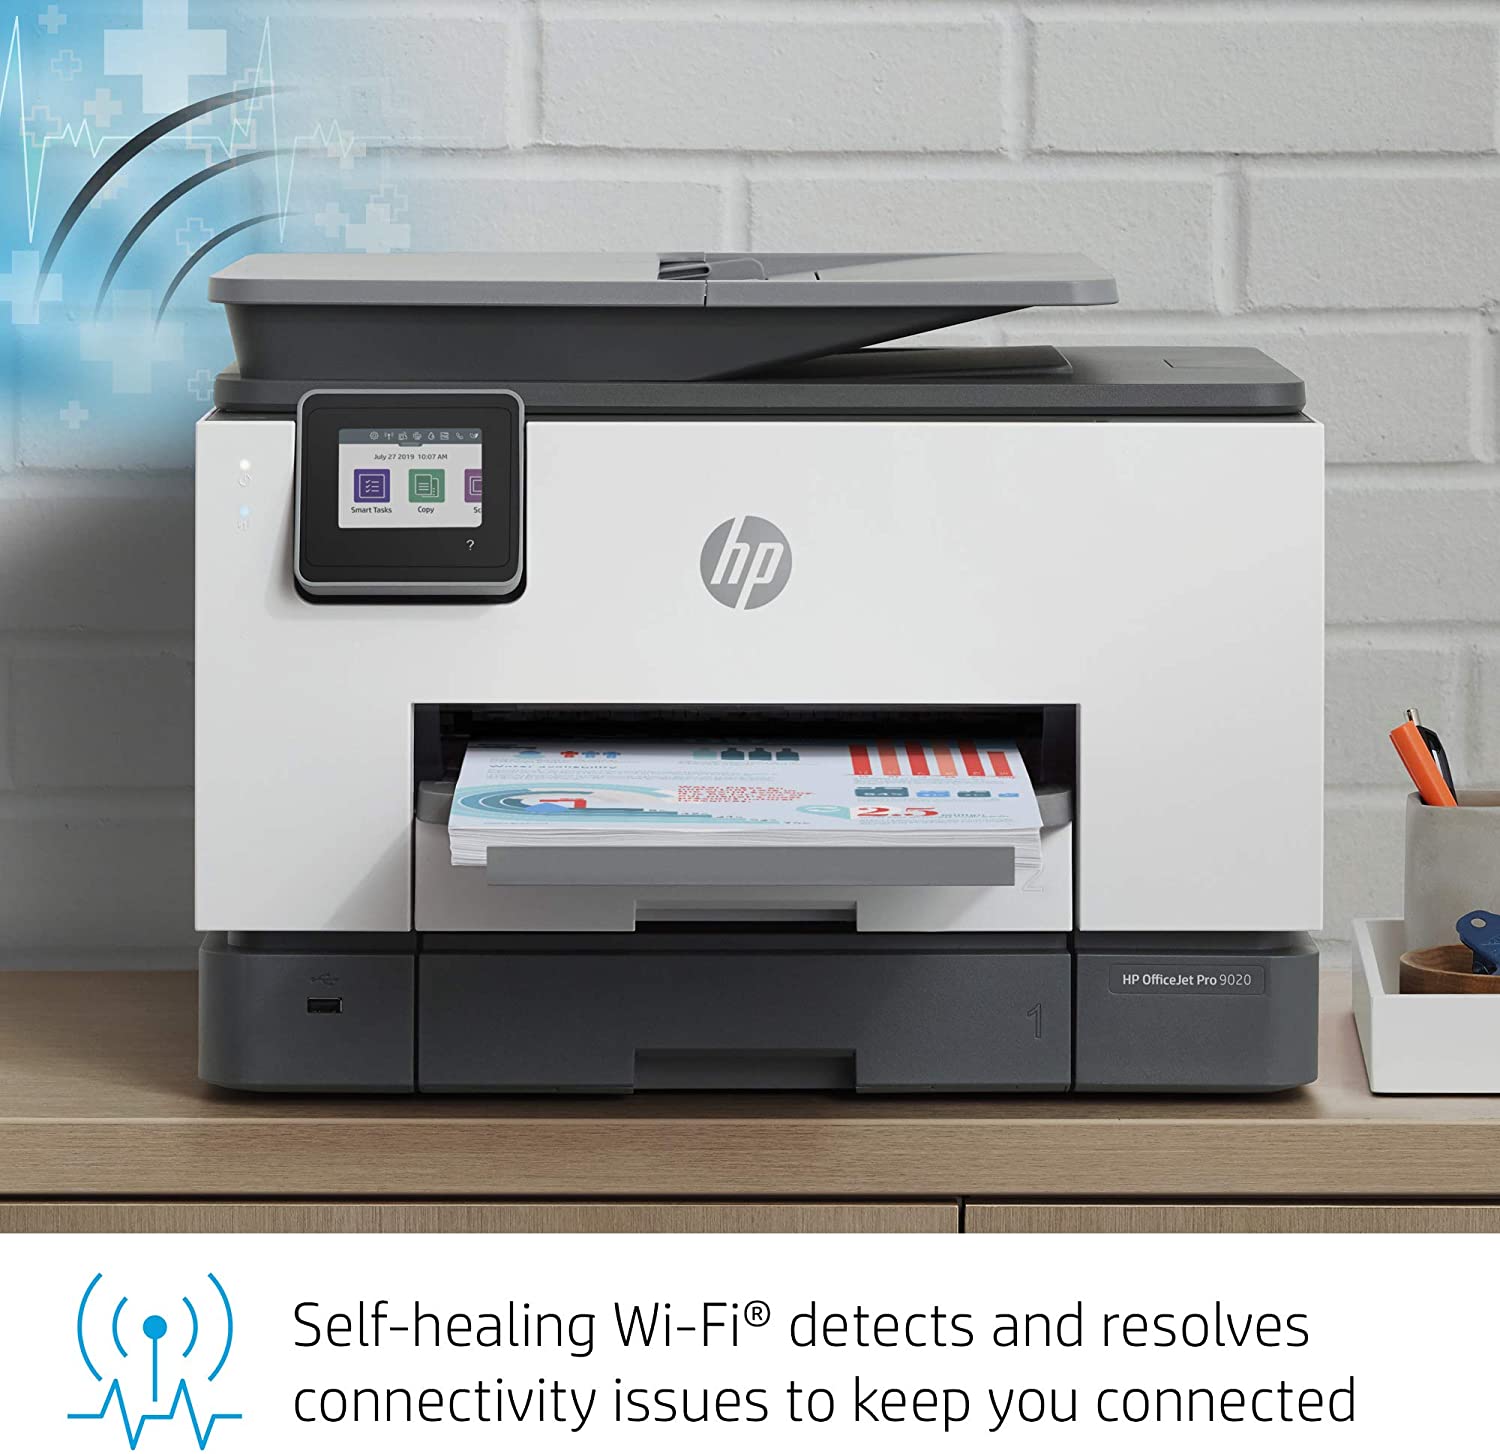 Impresora HP Multifuncion  OfficeJet Pro 9020 imprime, copia, escanea a doble cara de una sola pasada, fax  Adf automatico a doble cara Wifi color 22 ppm negro y 18 ppm color ecotank tinta pigmentada sin chip